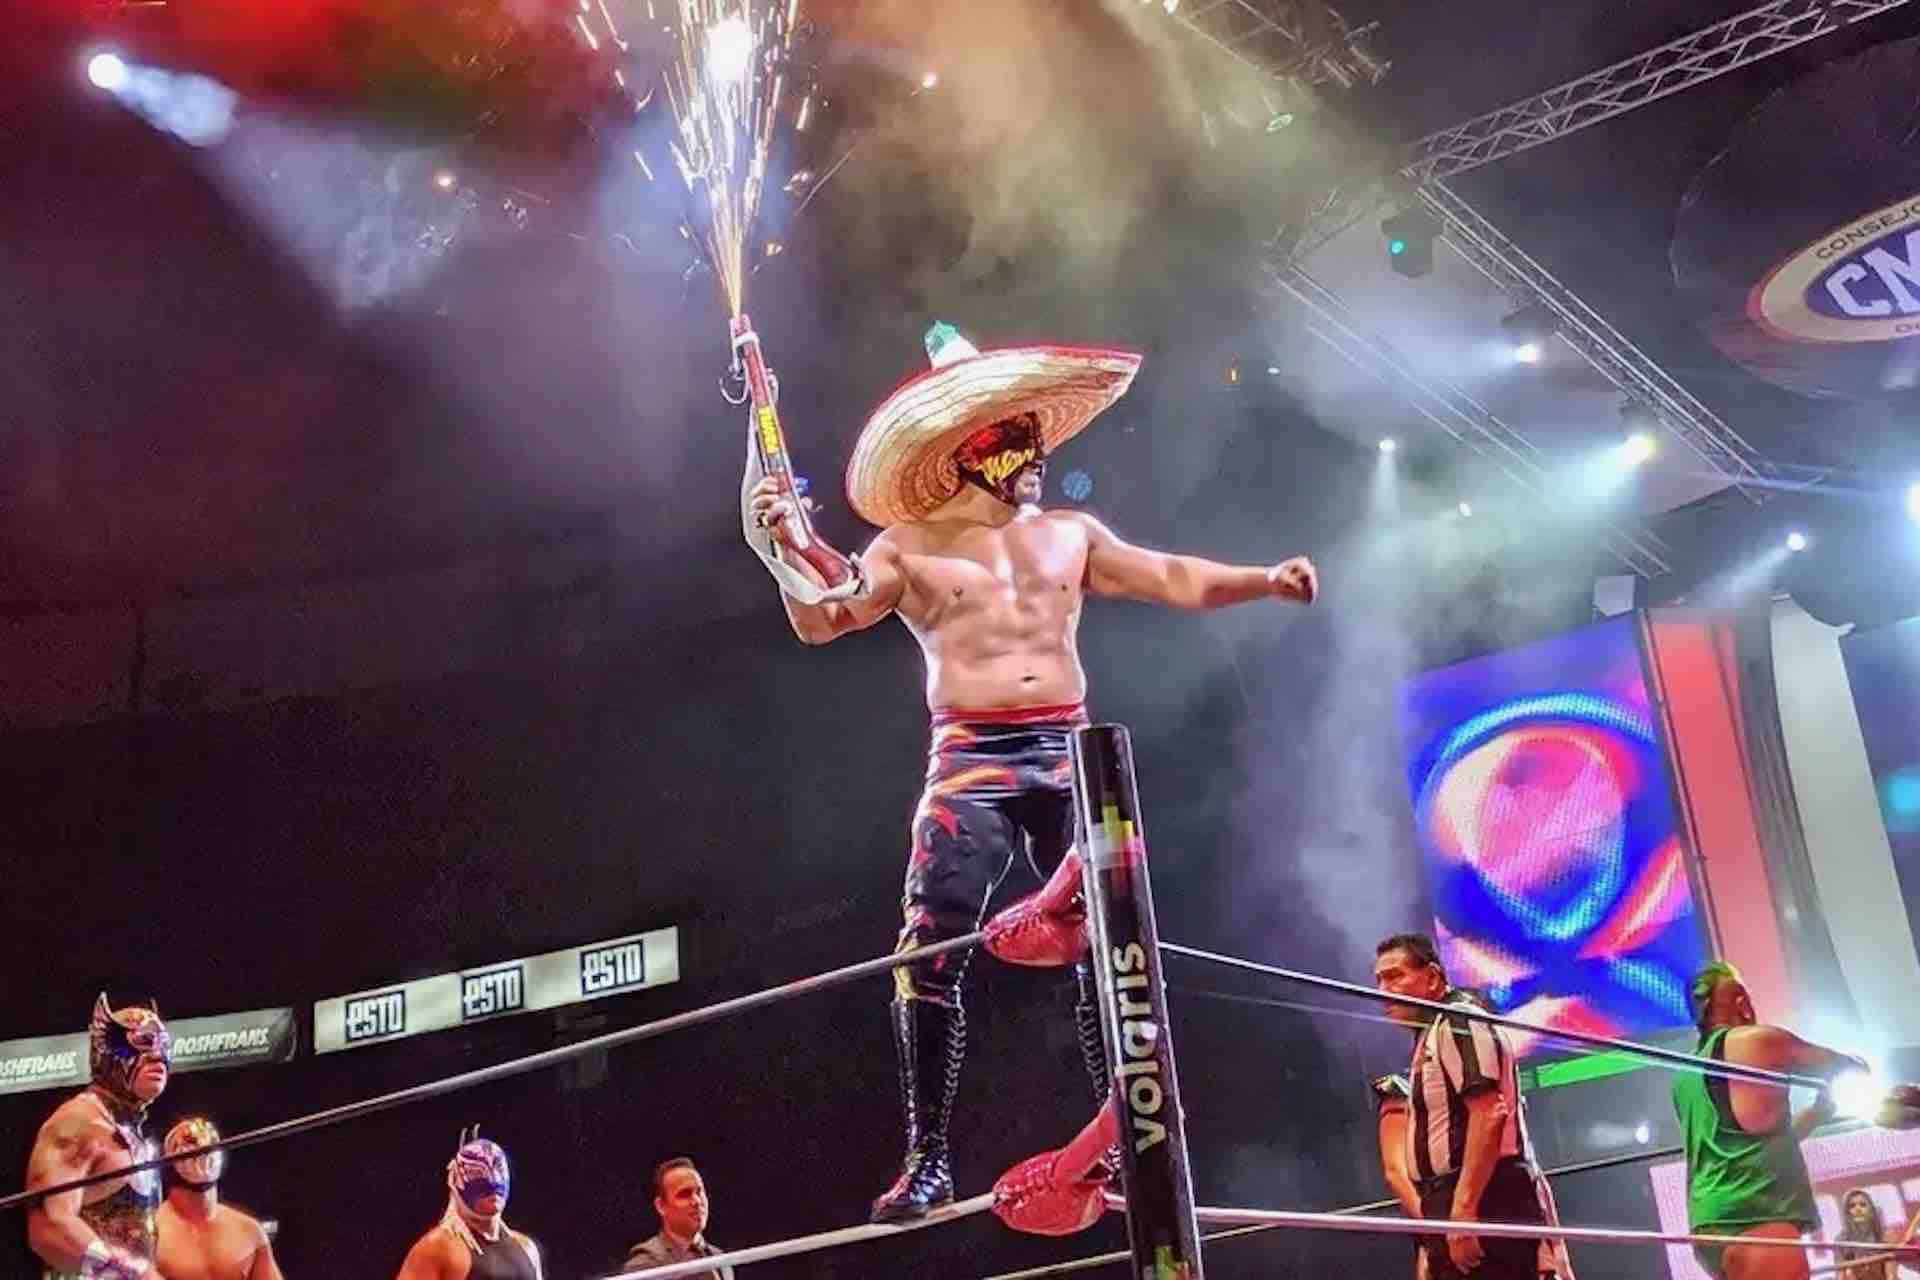 Lucha Libre Mexico City wrestler with sombrero hat